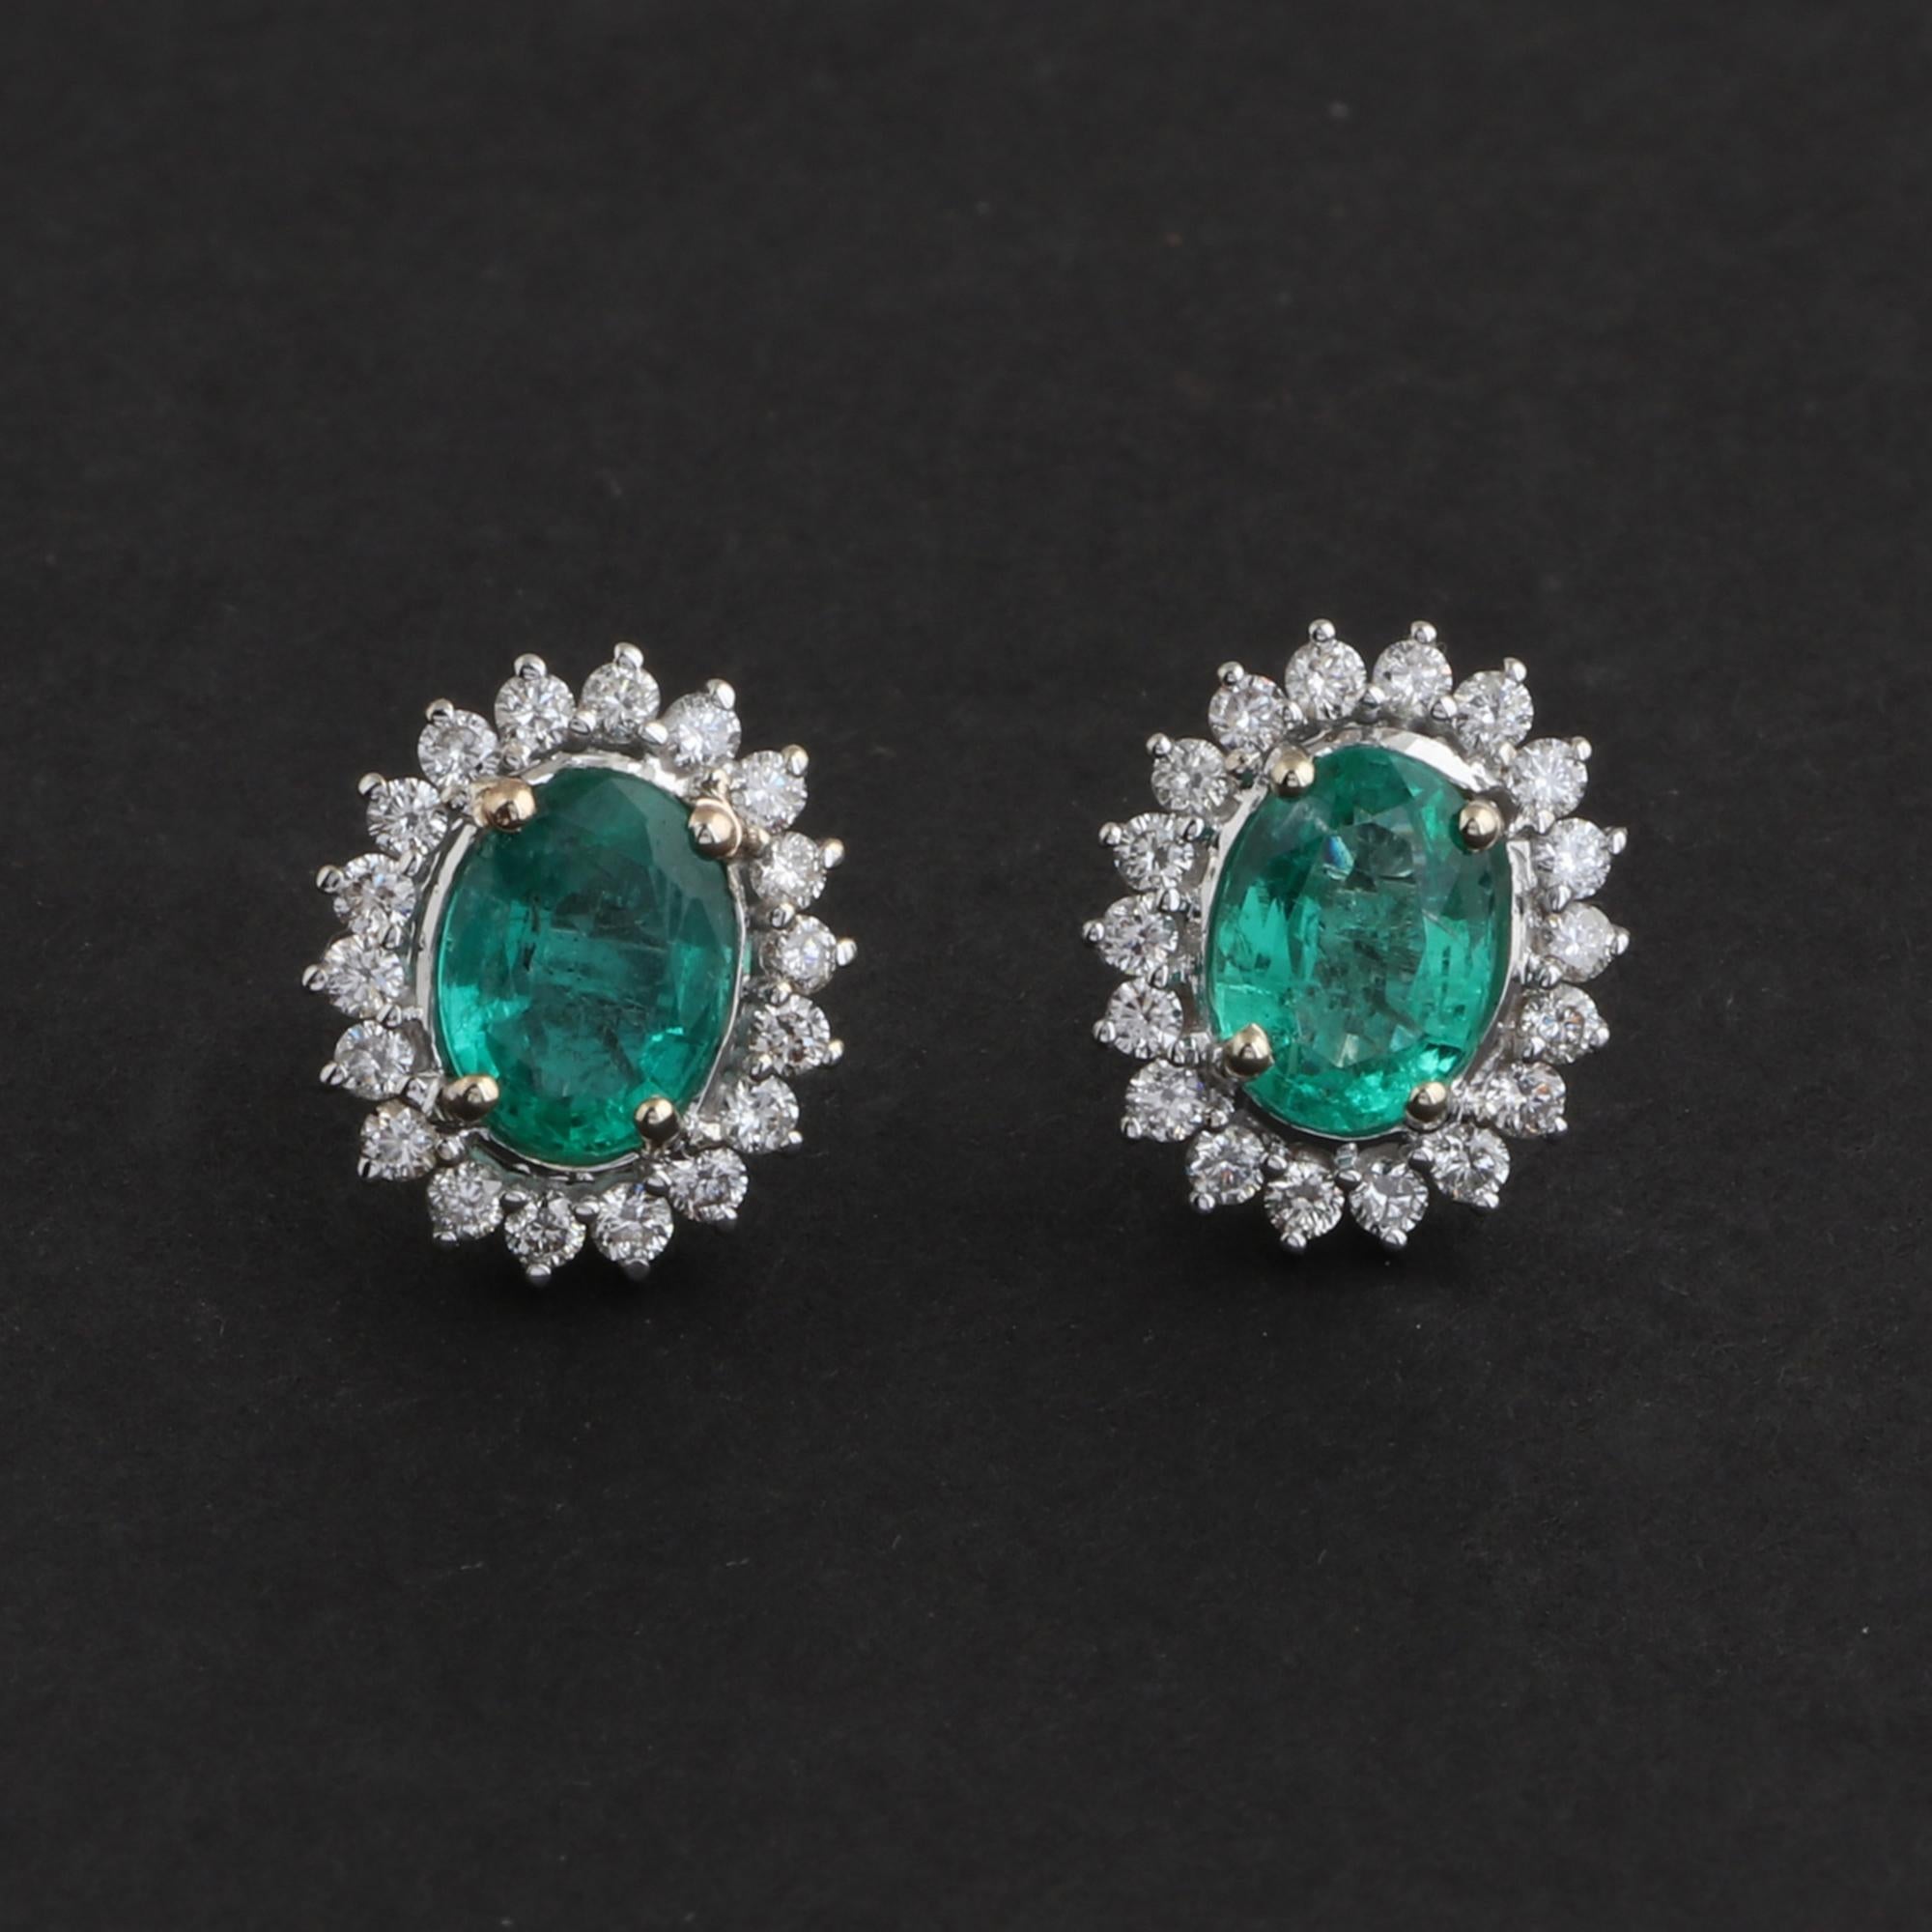 Oval Cut Oval Shape Zambian Emerald Gemstone Stud Earrings Diamond 18 Karat White Gold For Sale